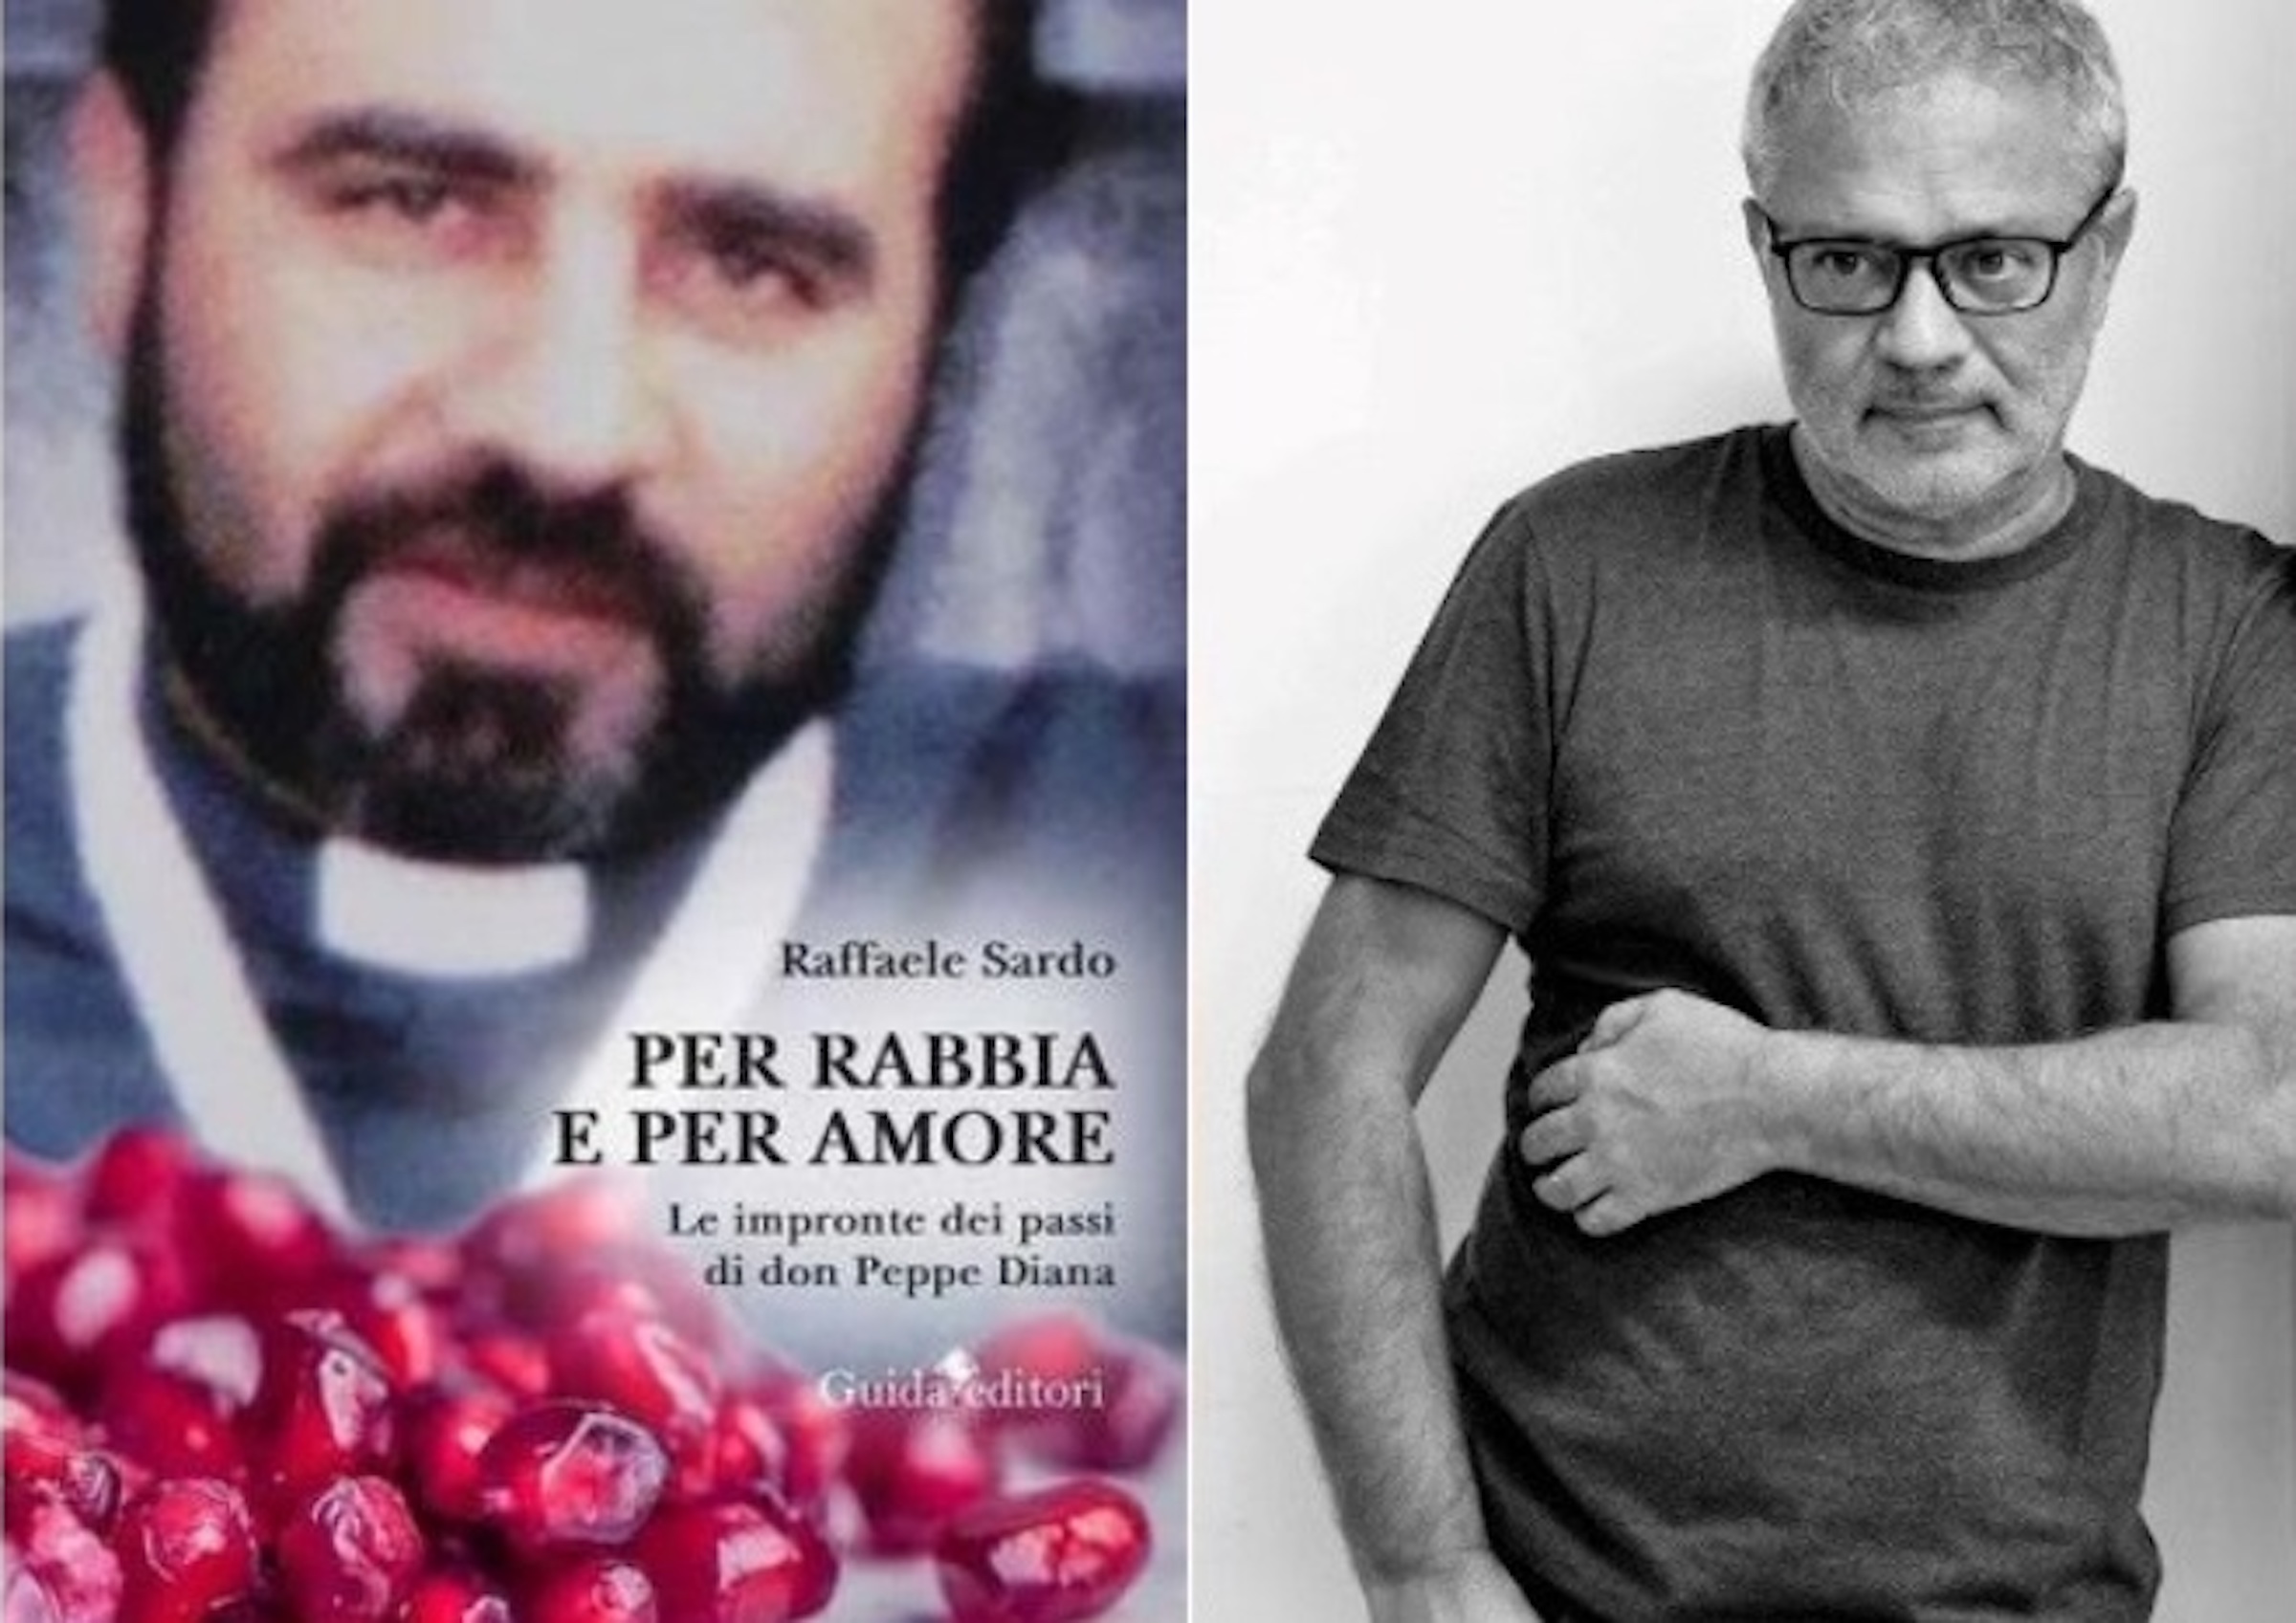 "Per rabbia e per amore", Raffaele Sardo racconta "Le impronte dei passi di don Peppe Diana" su #Contagiamocidicultura